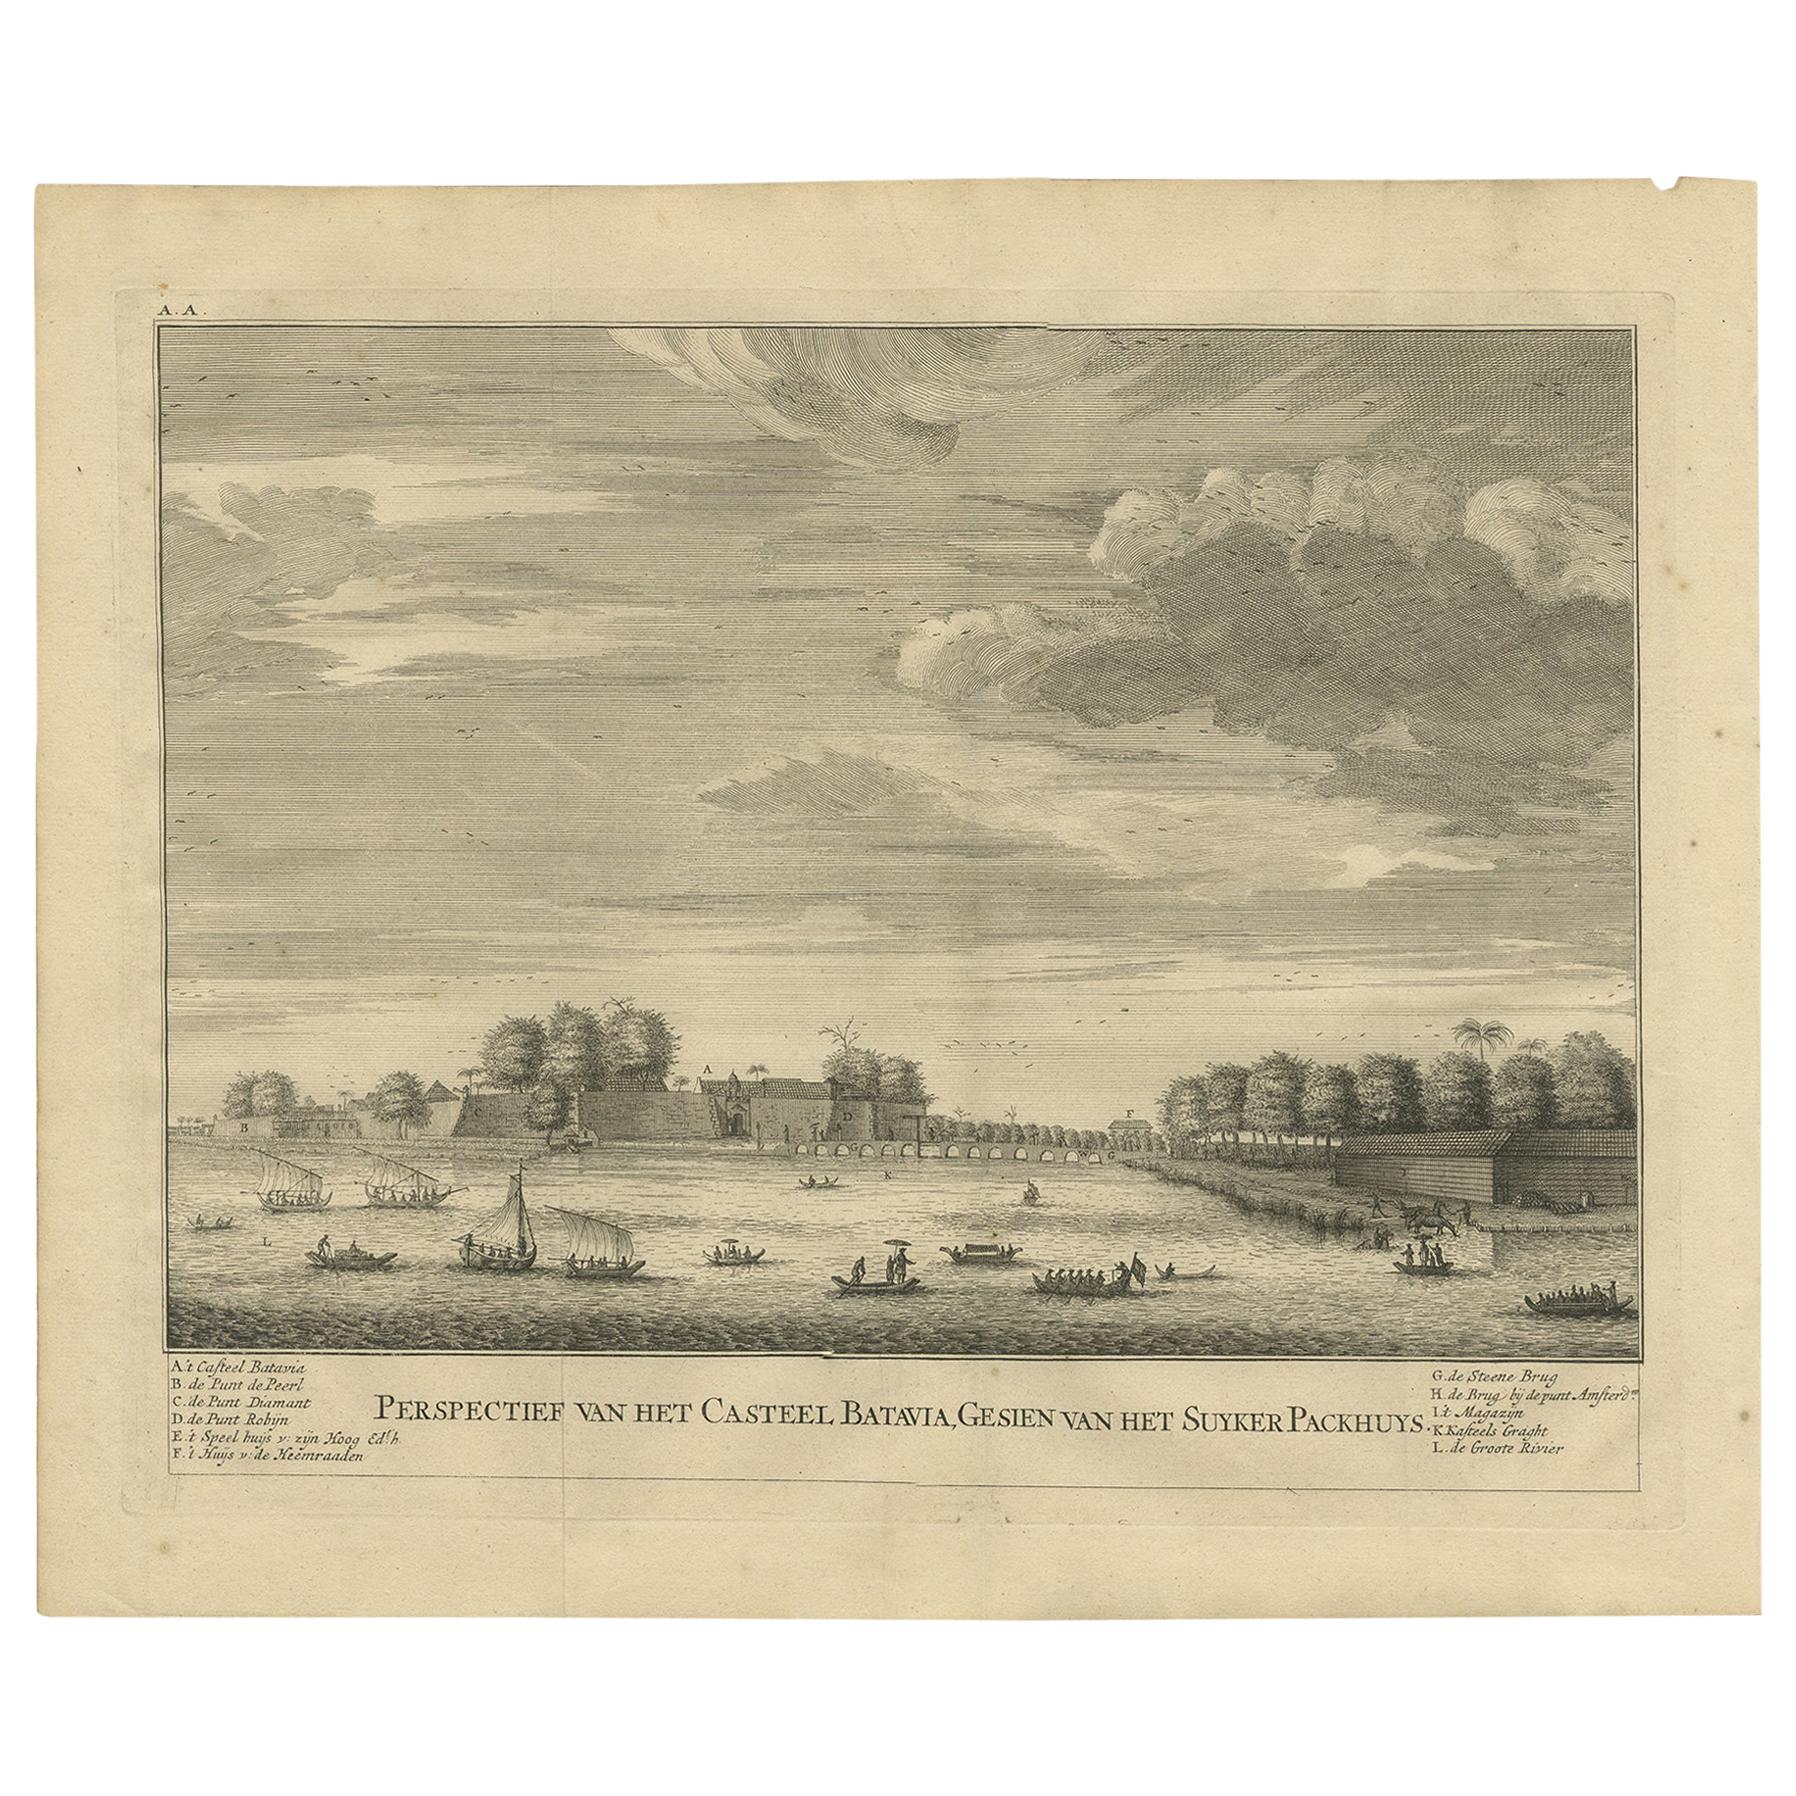 Impression ancienne du château de Batavia, capitale des Indes orientales néerlandaises, 1726